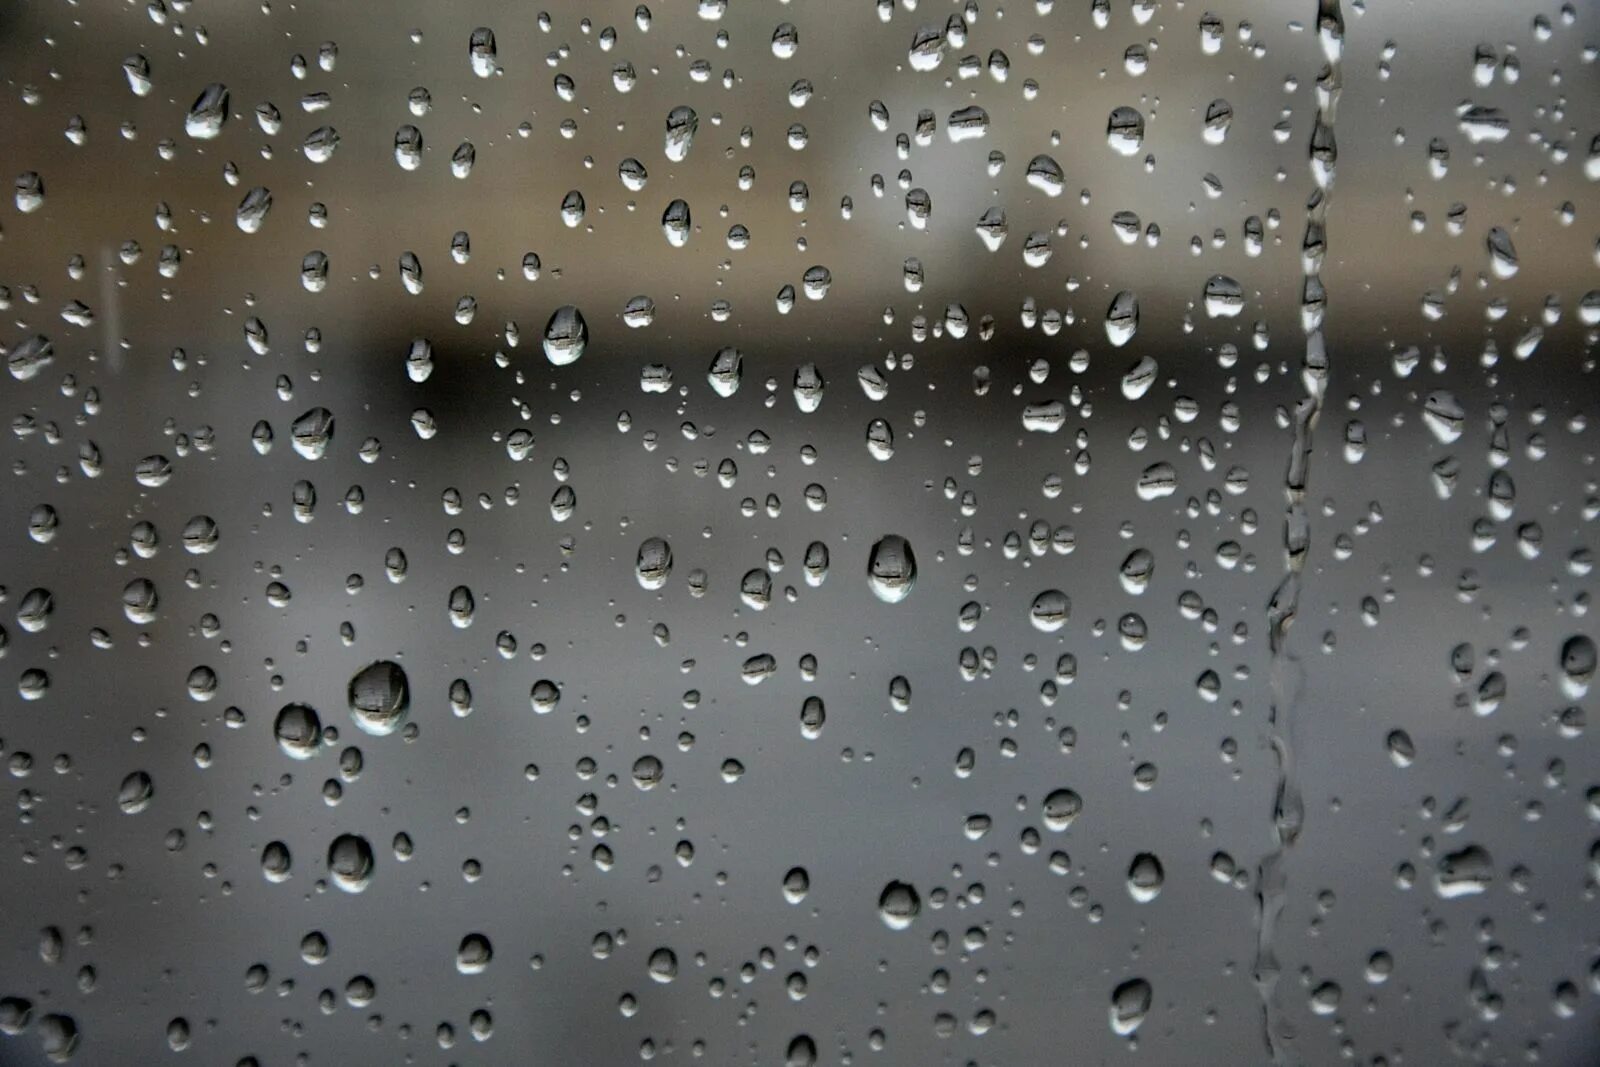 Дождь фильтр. Дождь футаж. Дождь для ФШ. Эффект дождя для фотошопа. Realistic rain